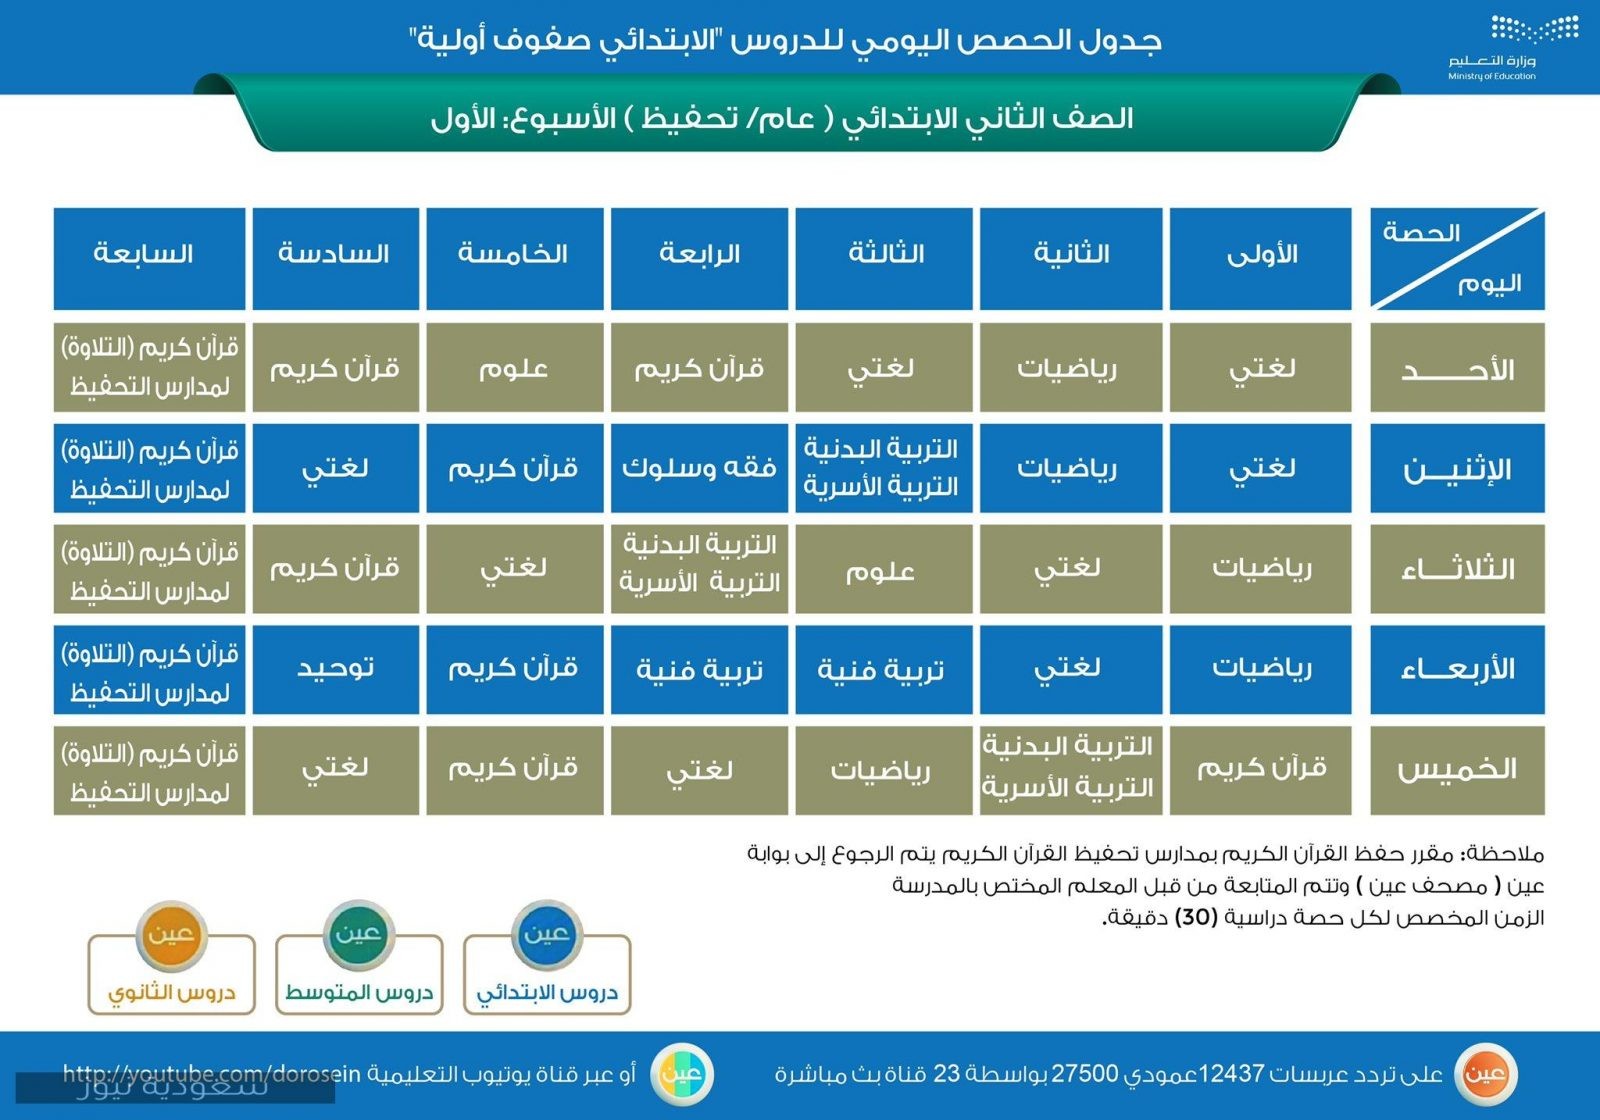 جدول حصص عين للمراحل الدراسية بالسعودية الابتدائية والمتوسطة والثانوية 1442